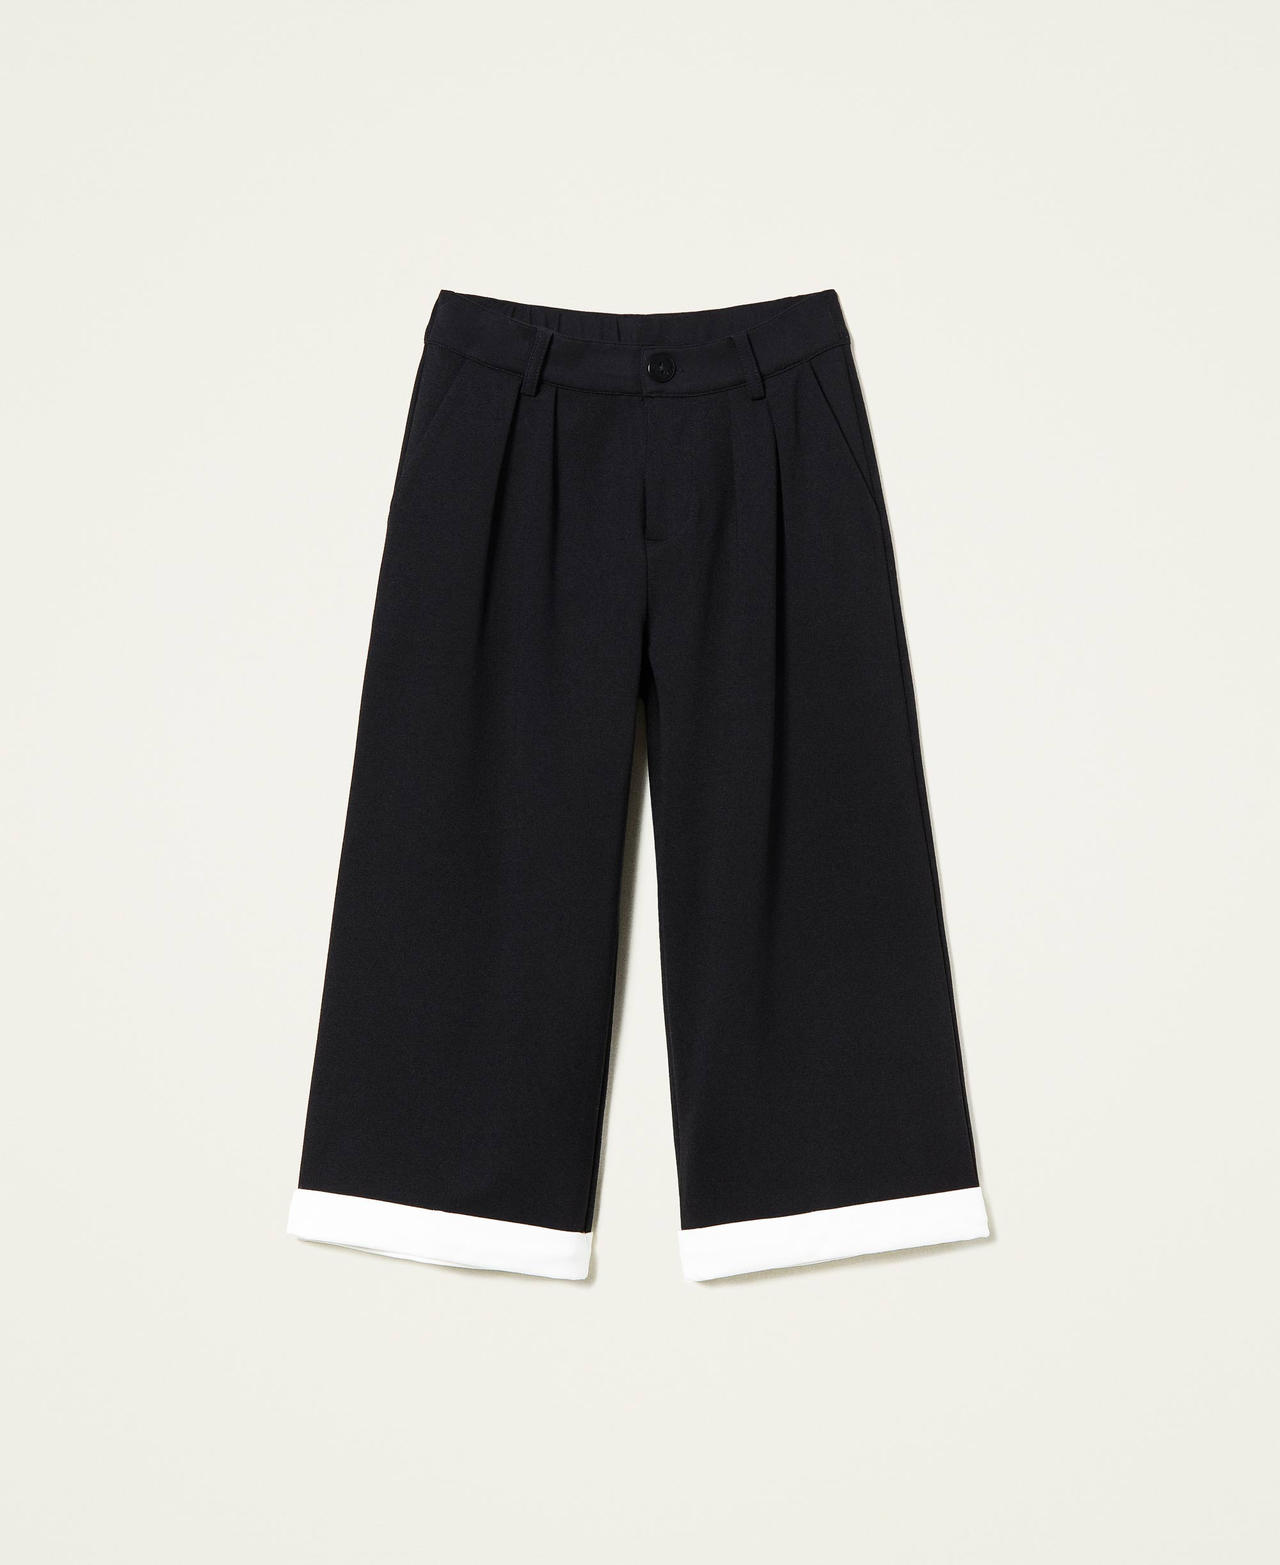 Pantalon cropped avec bas contrasté Bicolore Noir / Blanc Cassé Fille 221GJ2232-0S